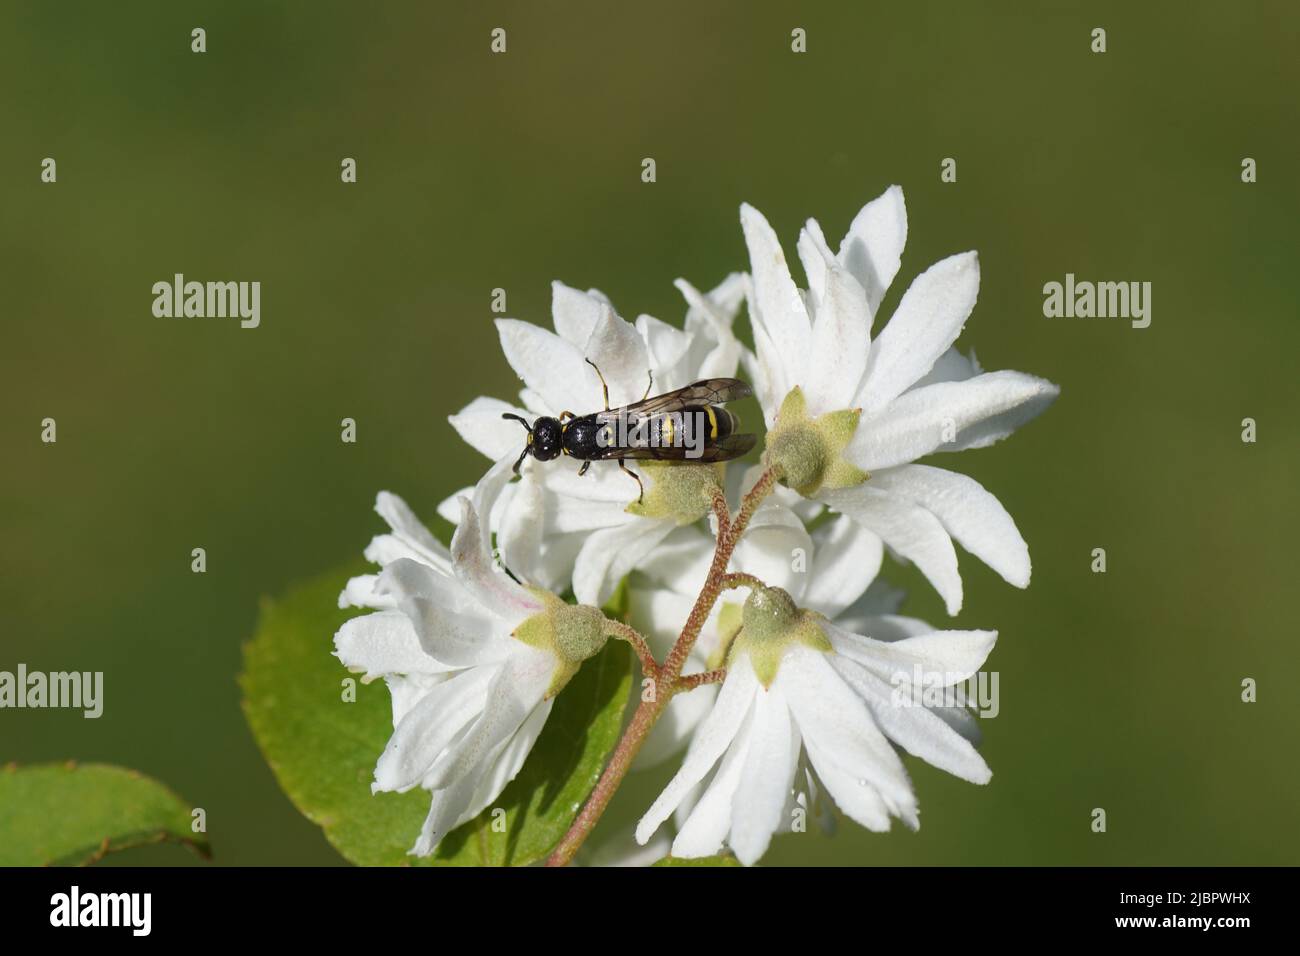 Symmorphus, aubfamily Potter wasps, mason wasps (Eumeninae). Family Social Wasps (Vespidae). On the backside of white flowers of the shrub Deutzia, Stock Photo